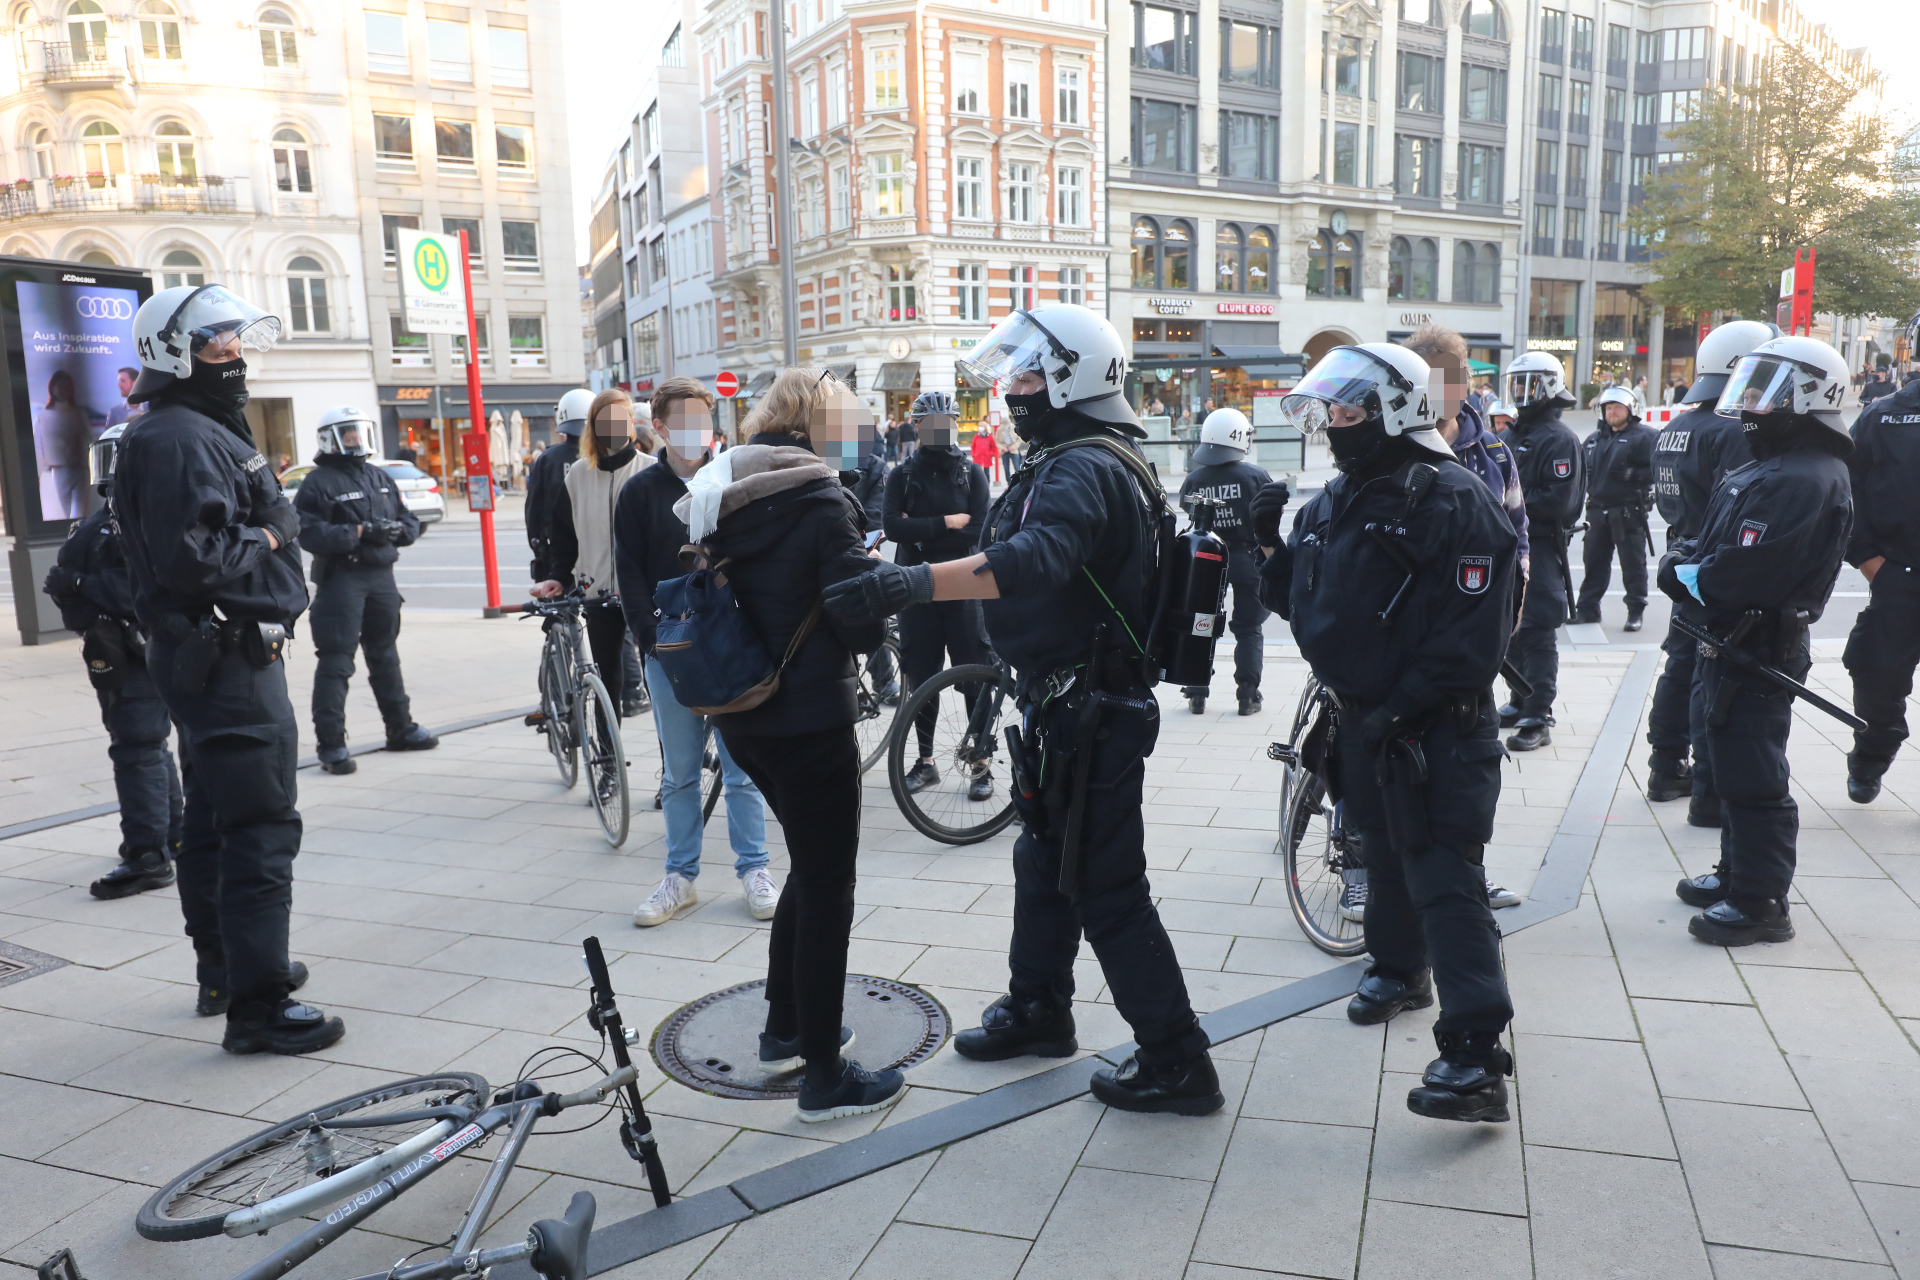 Die Demonstration gegen Corona-Maßnahmen wurde von Gegendemonstranten unter anderem mit Fahrrädern gestört.